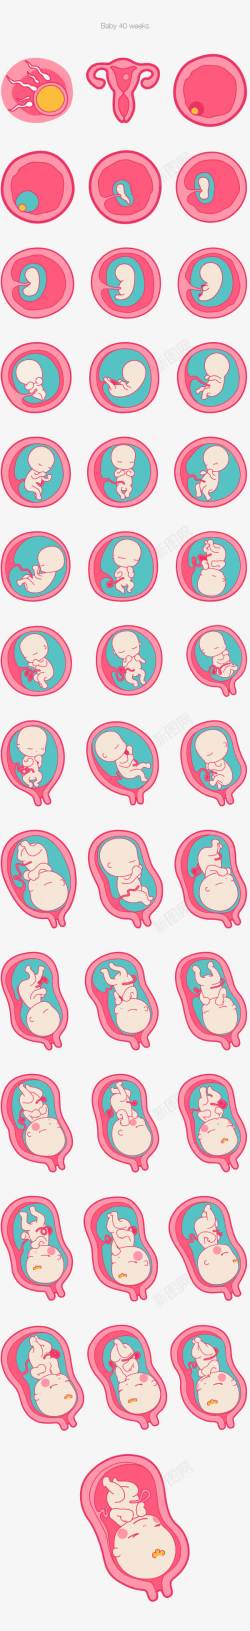 胚胎发育胚胎发育高清图片